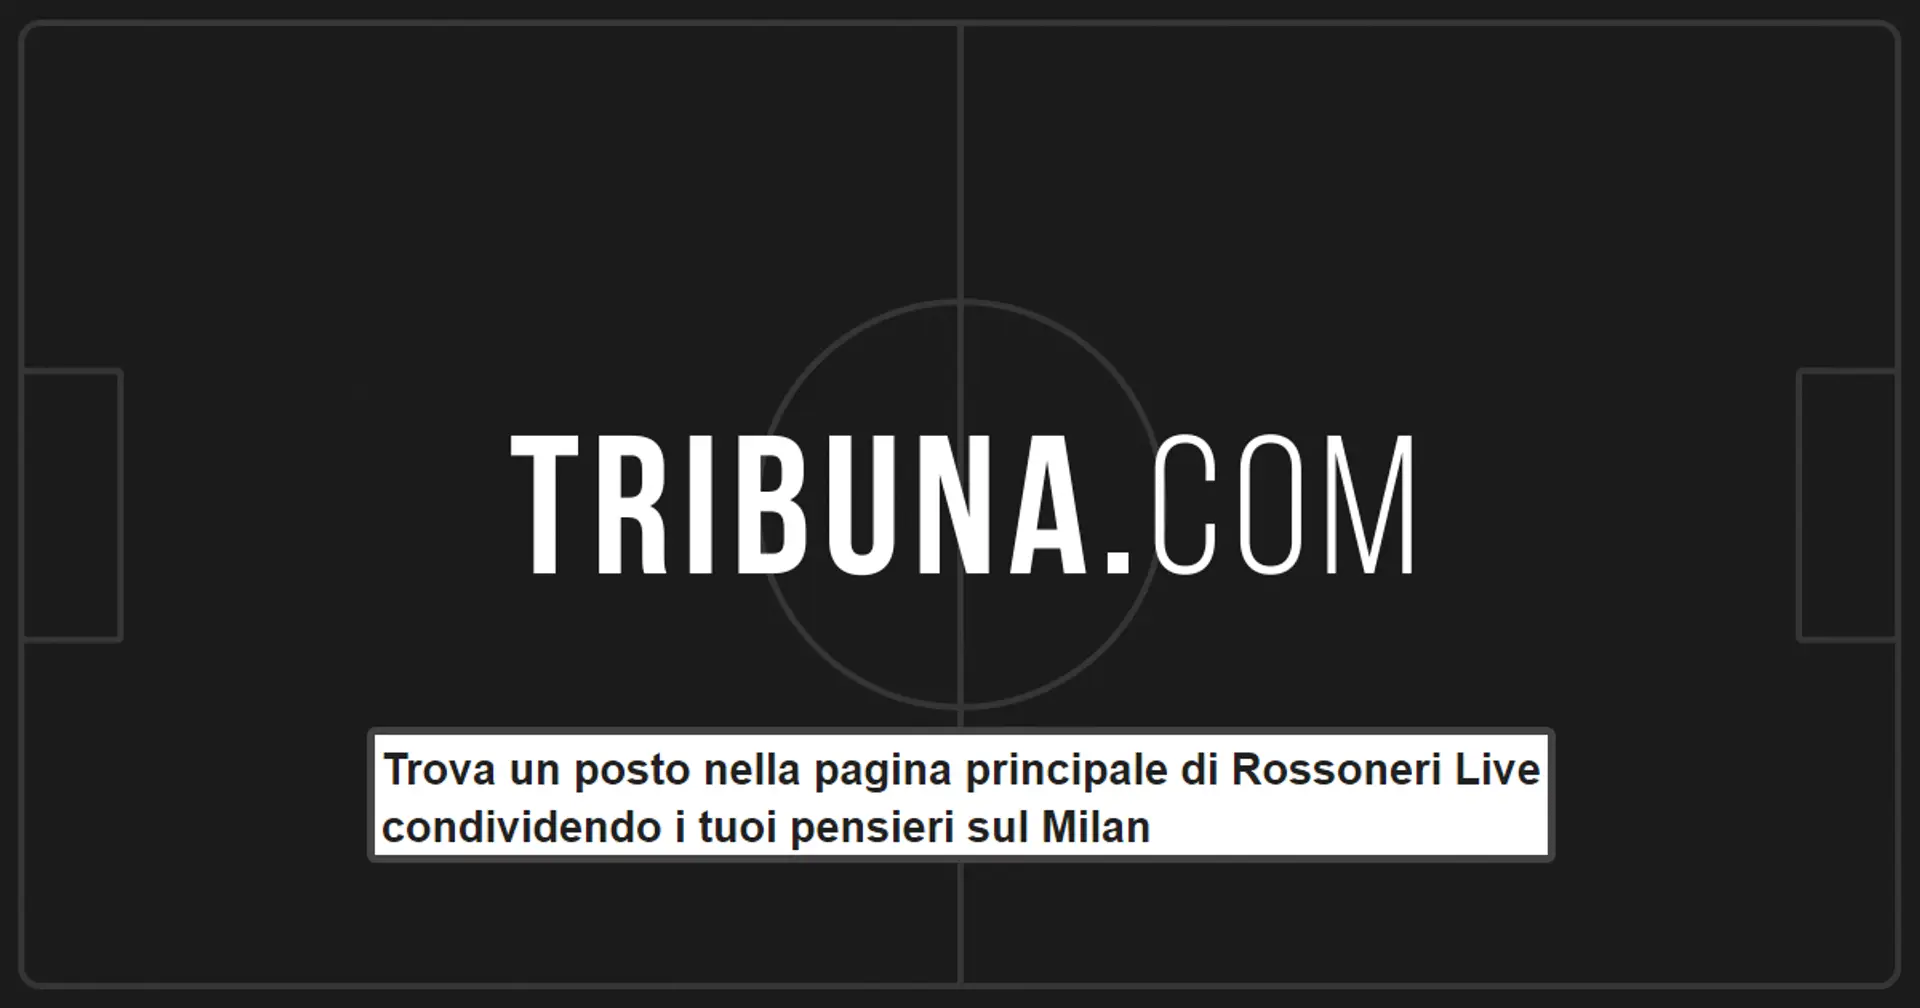 ✍️Trova un posto nella pagina principale di Rossoneri Live condividendo i tuoi pensieri sul Milan